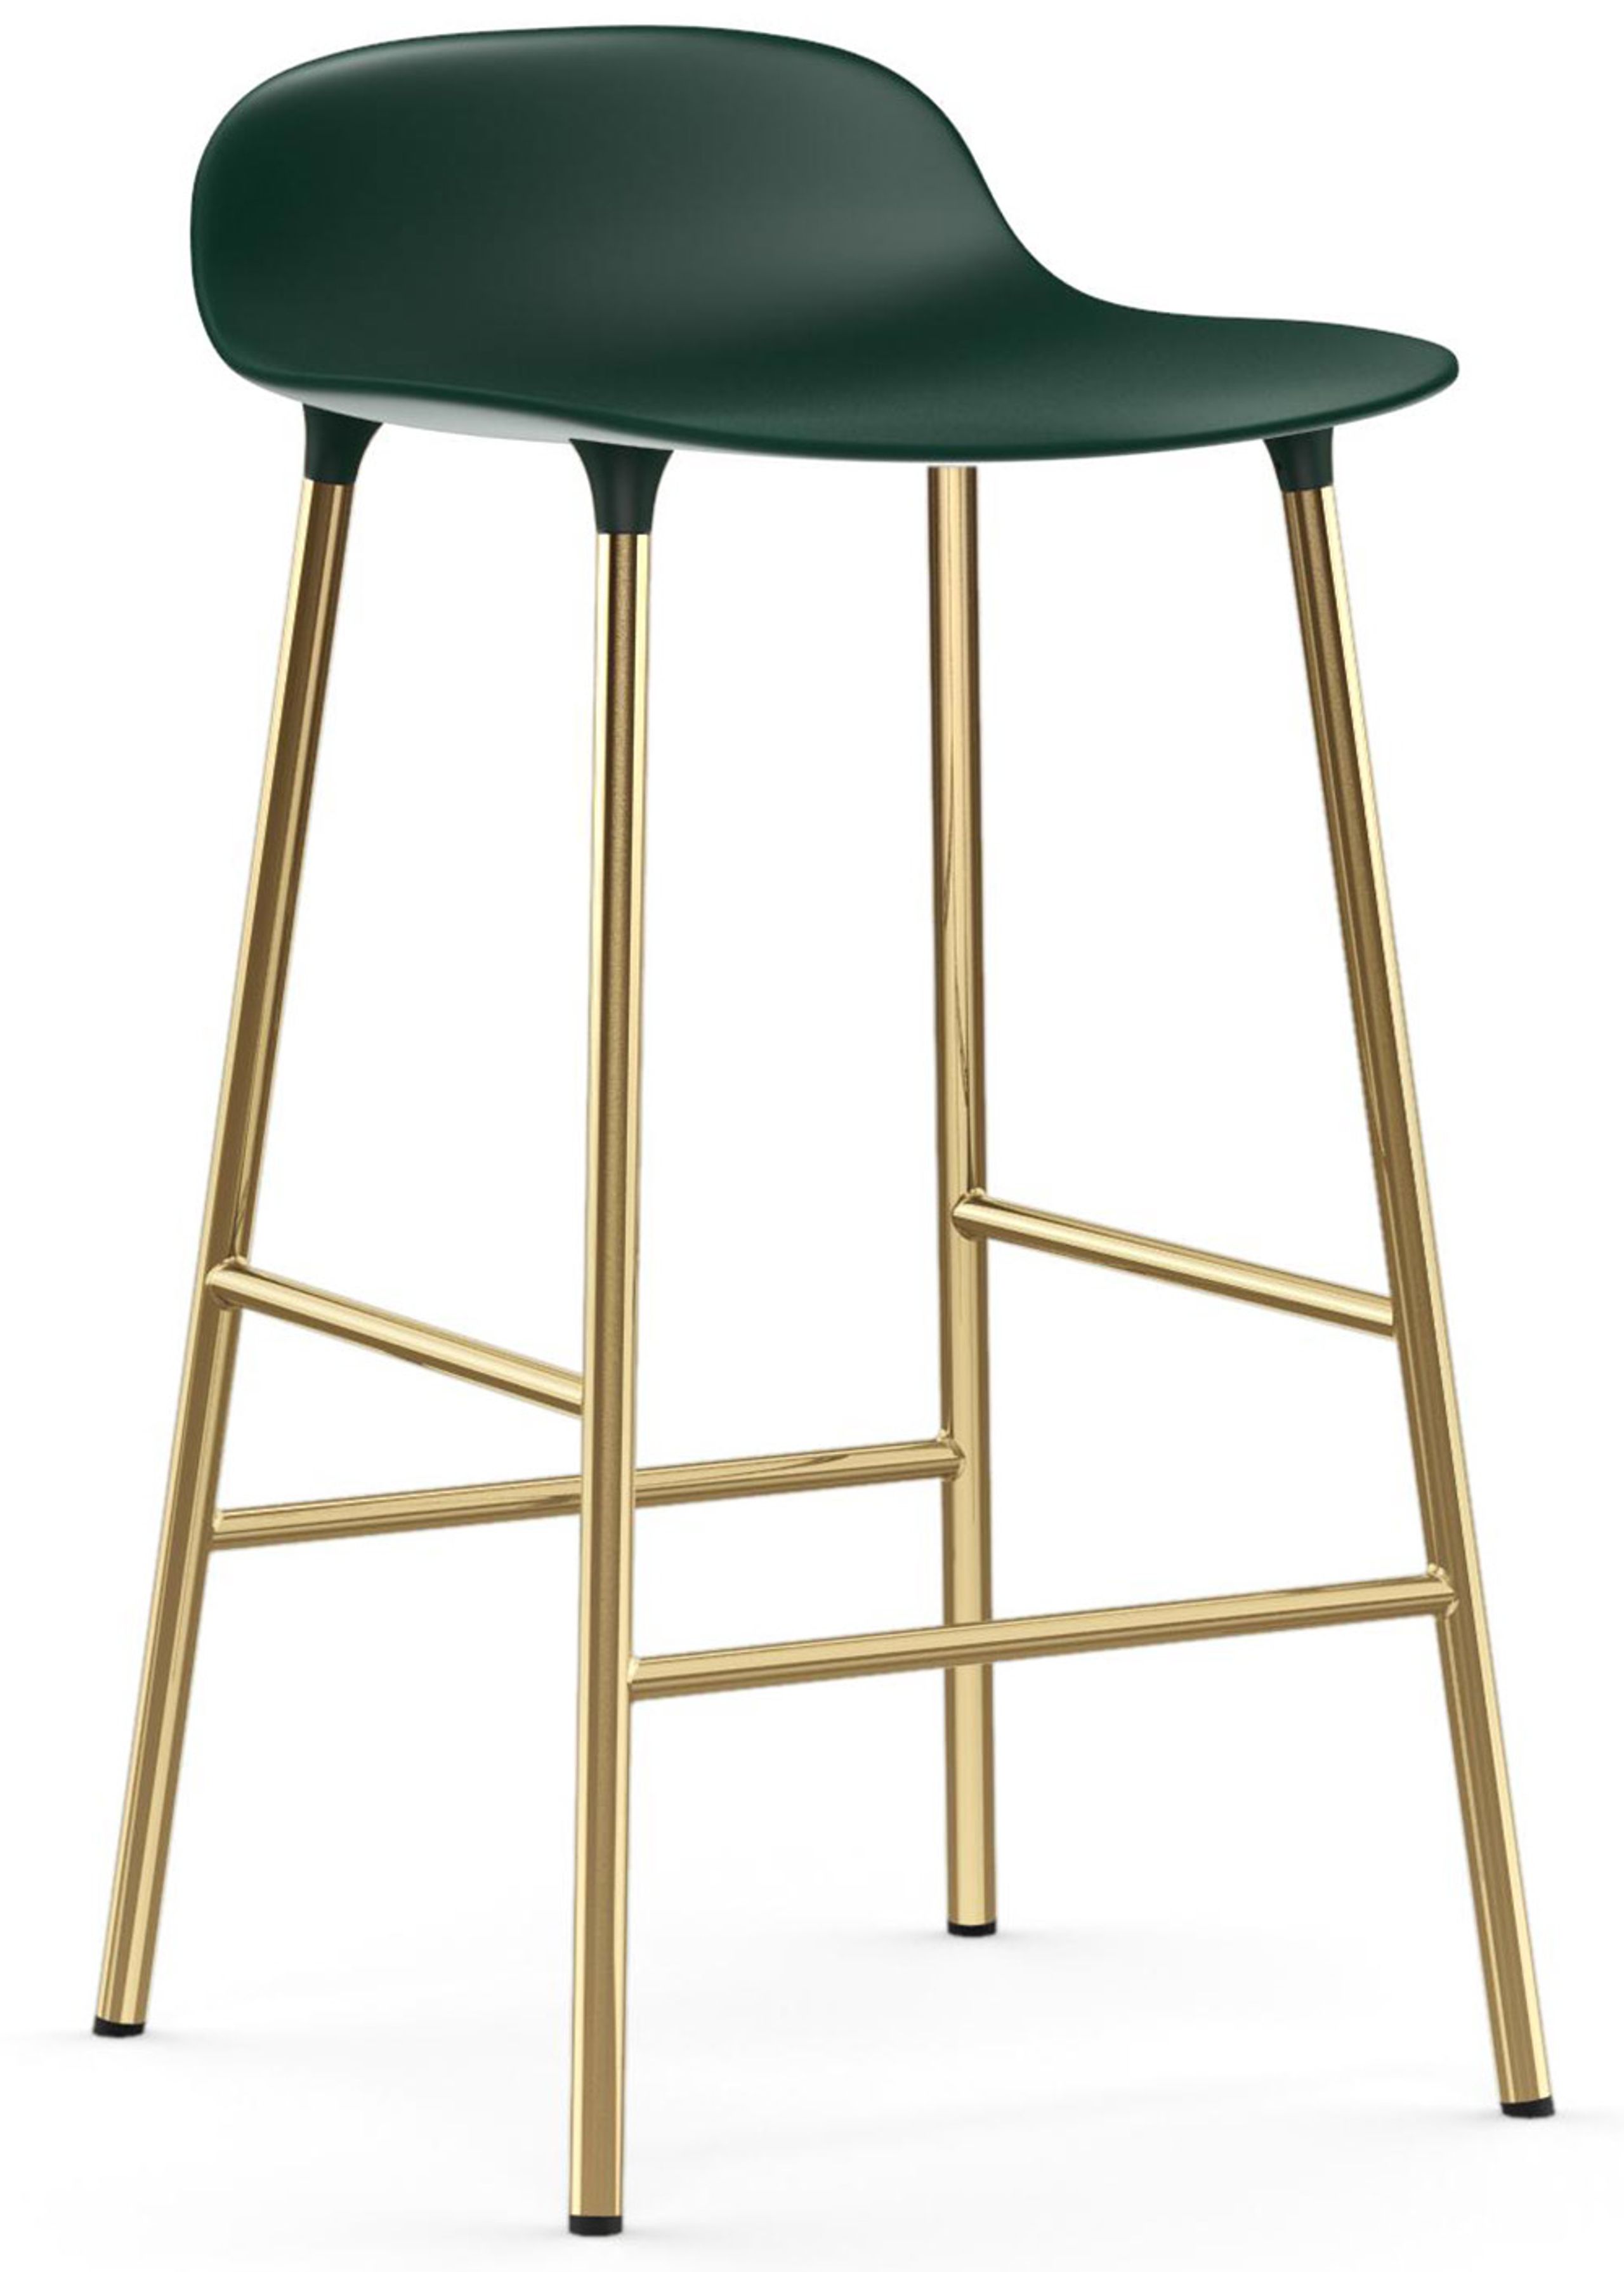 Normann Copenhagen - Tabouret de bar - Form Barstool - 65 cm - Steel, Chrome & Brass - Green / Brass